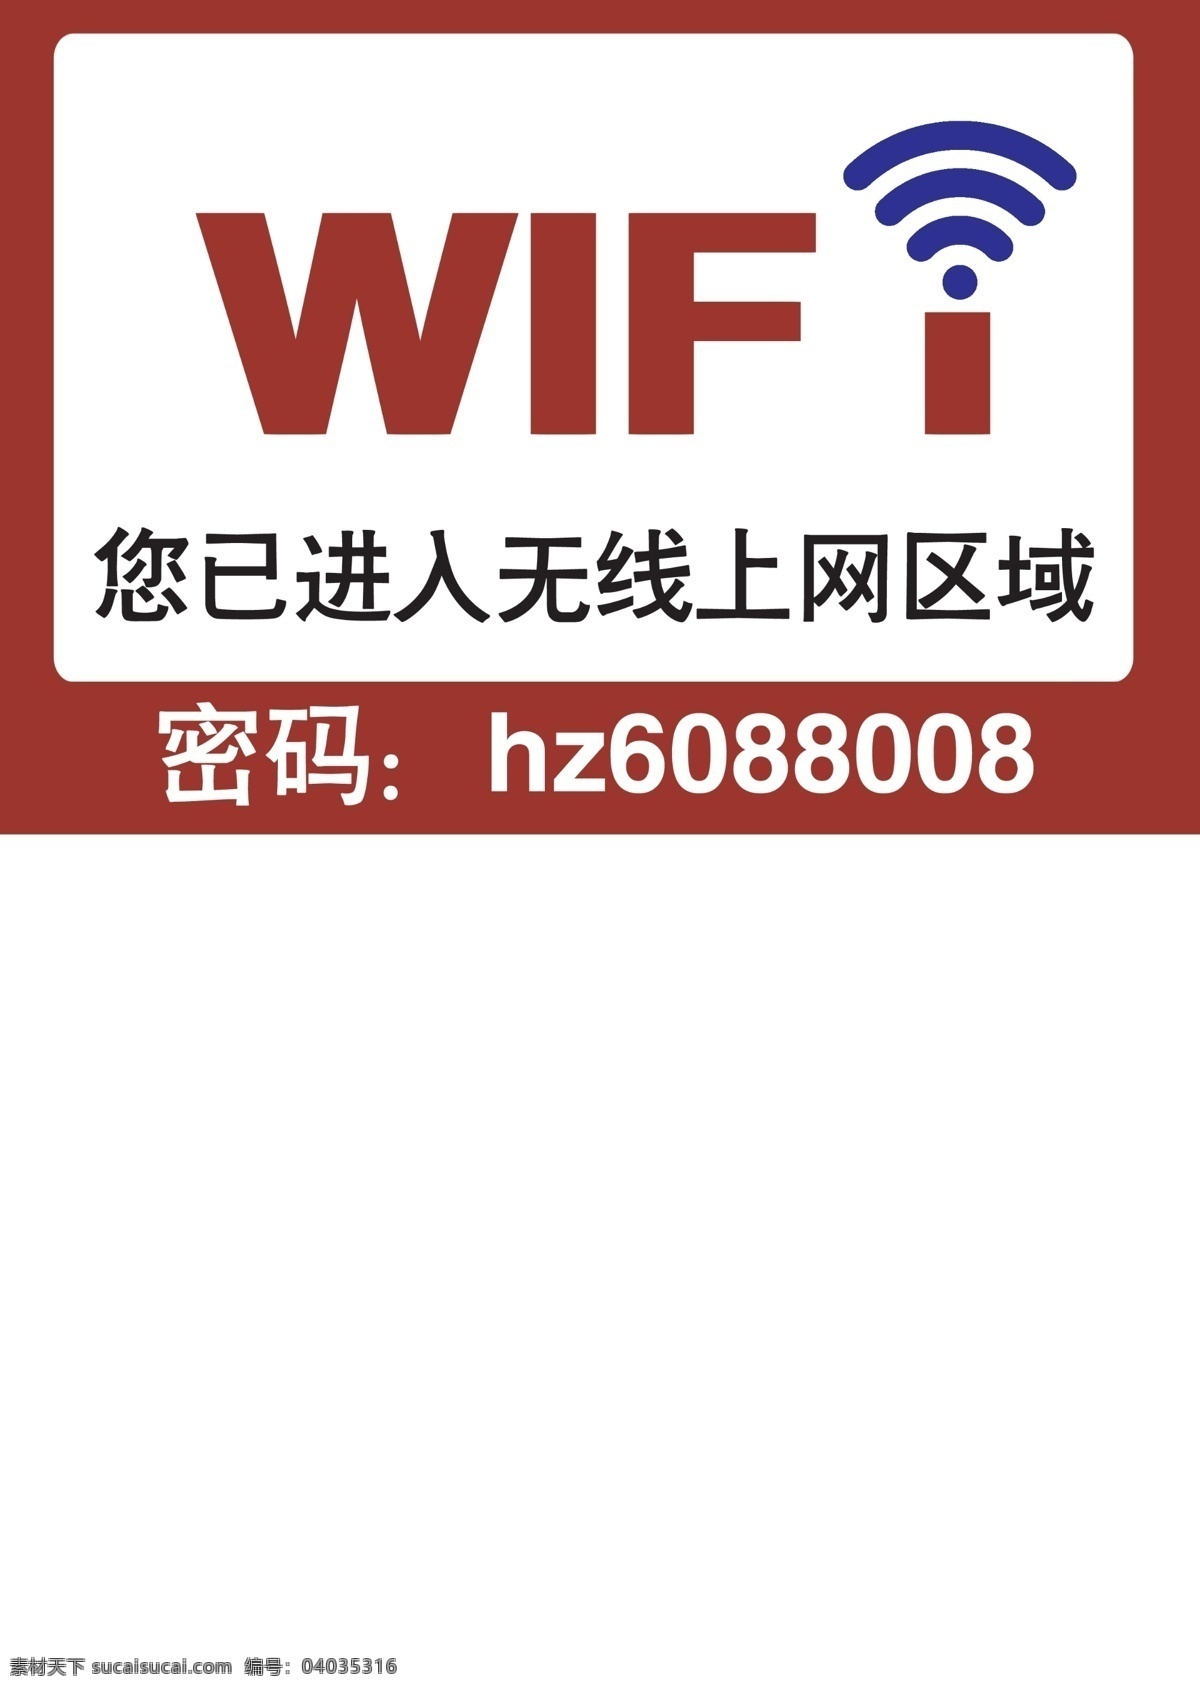 免费上网 免费 无线 上网 区域 wifi 分层 标志图标 公共标识标志